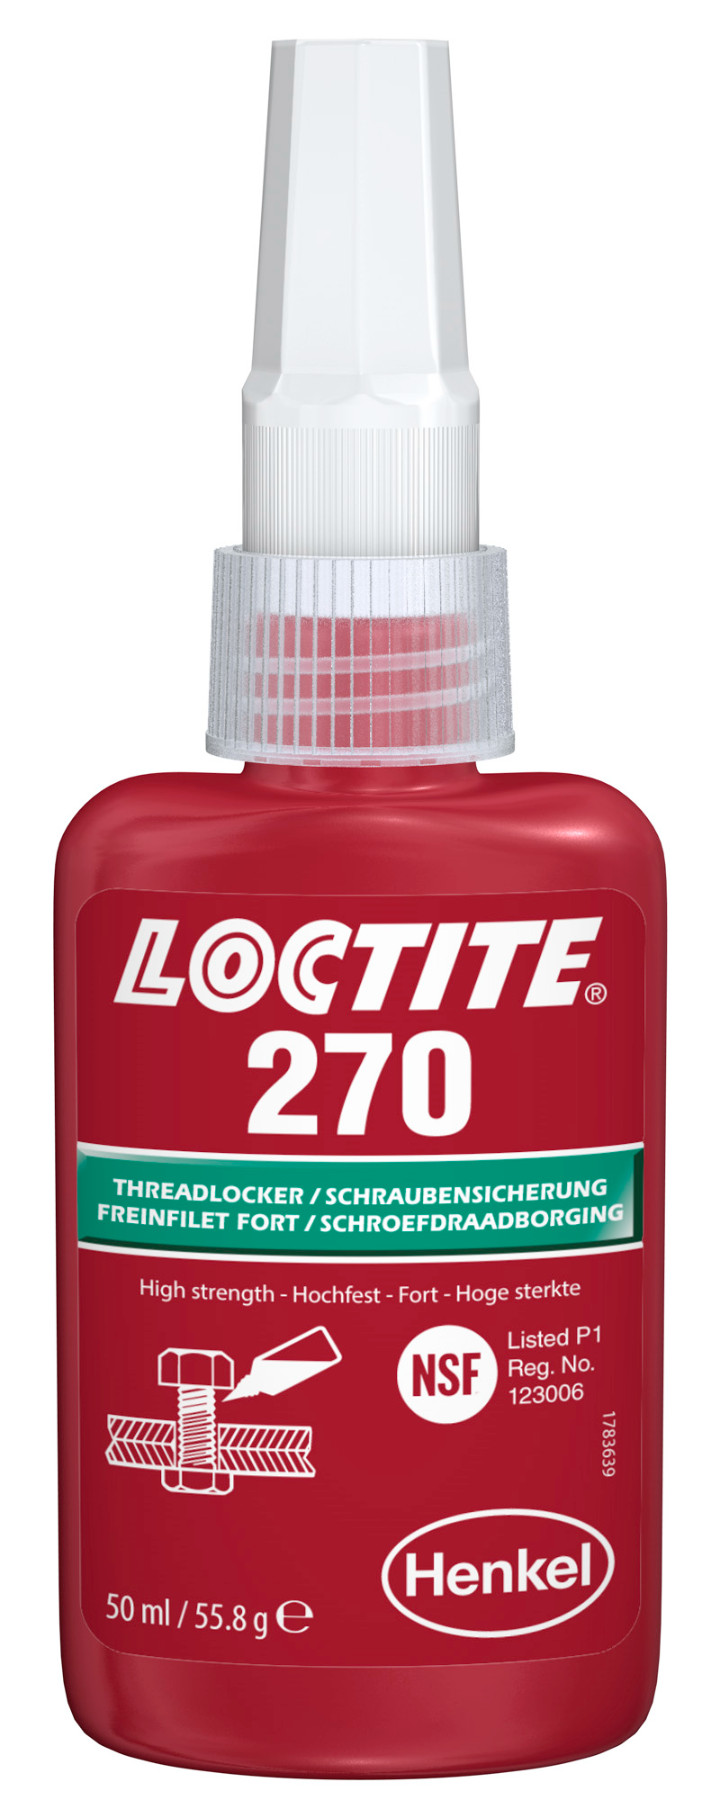 Loctite 270 Sicherung- u. Befestigung, 10 ml # 27016, stark